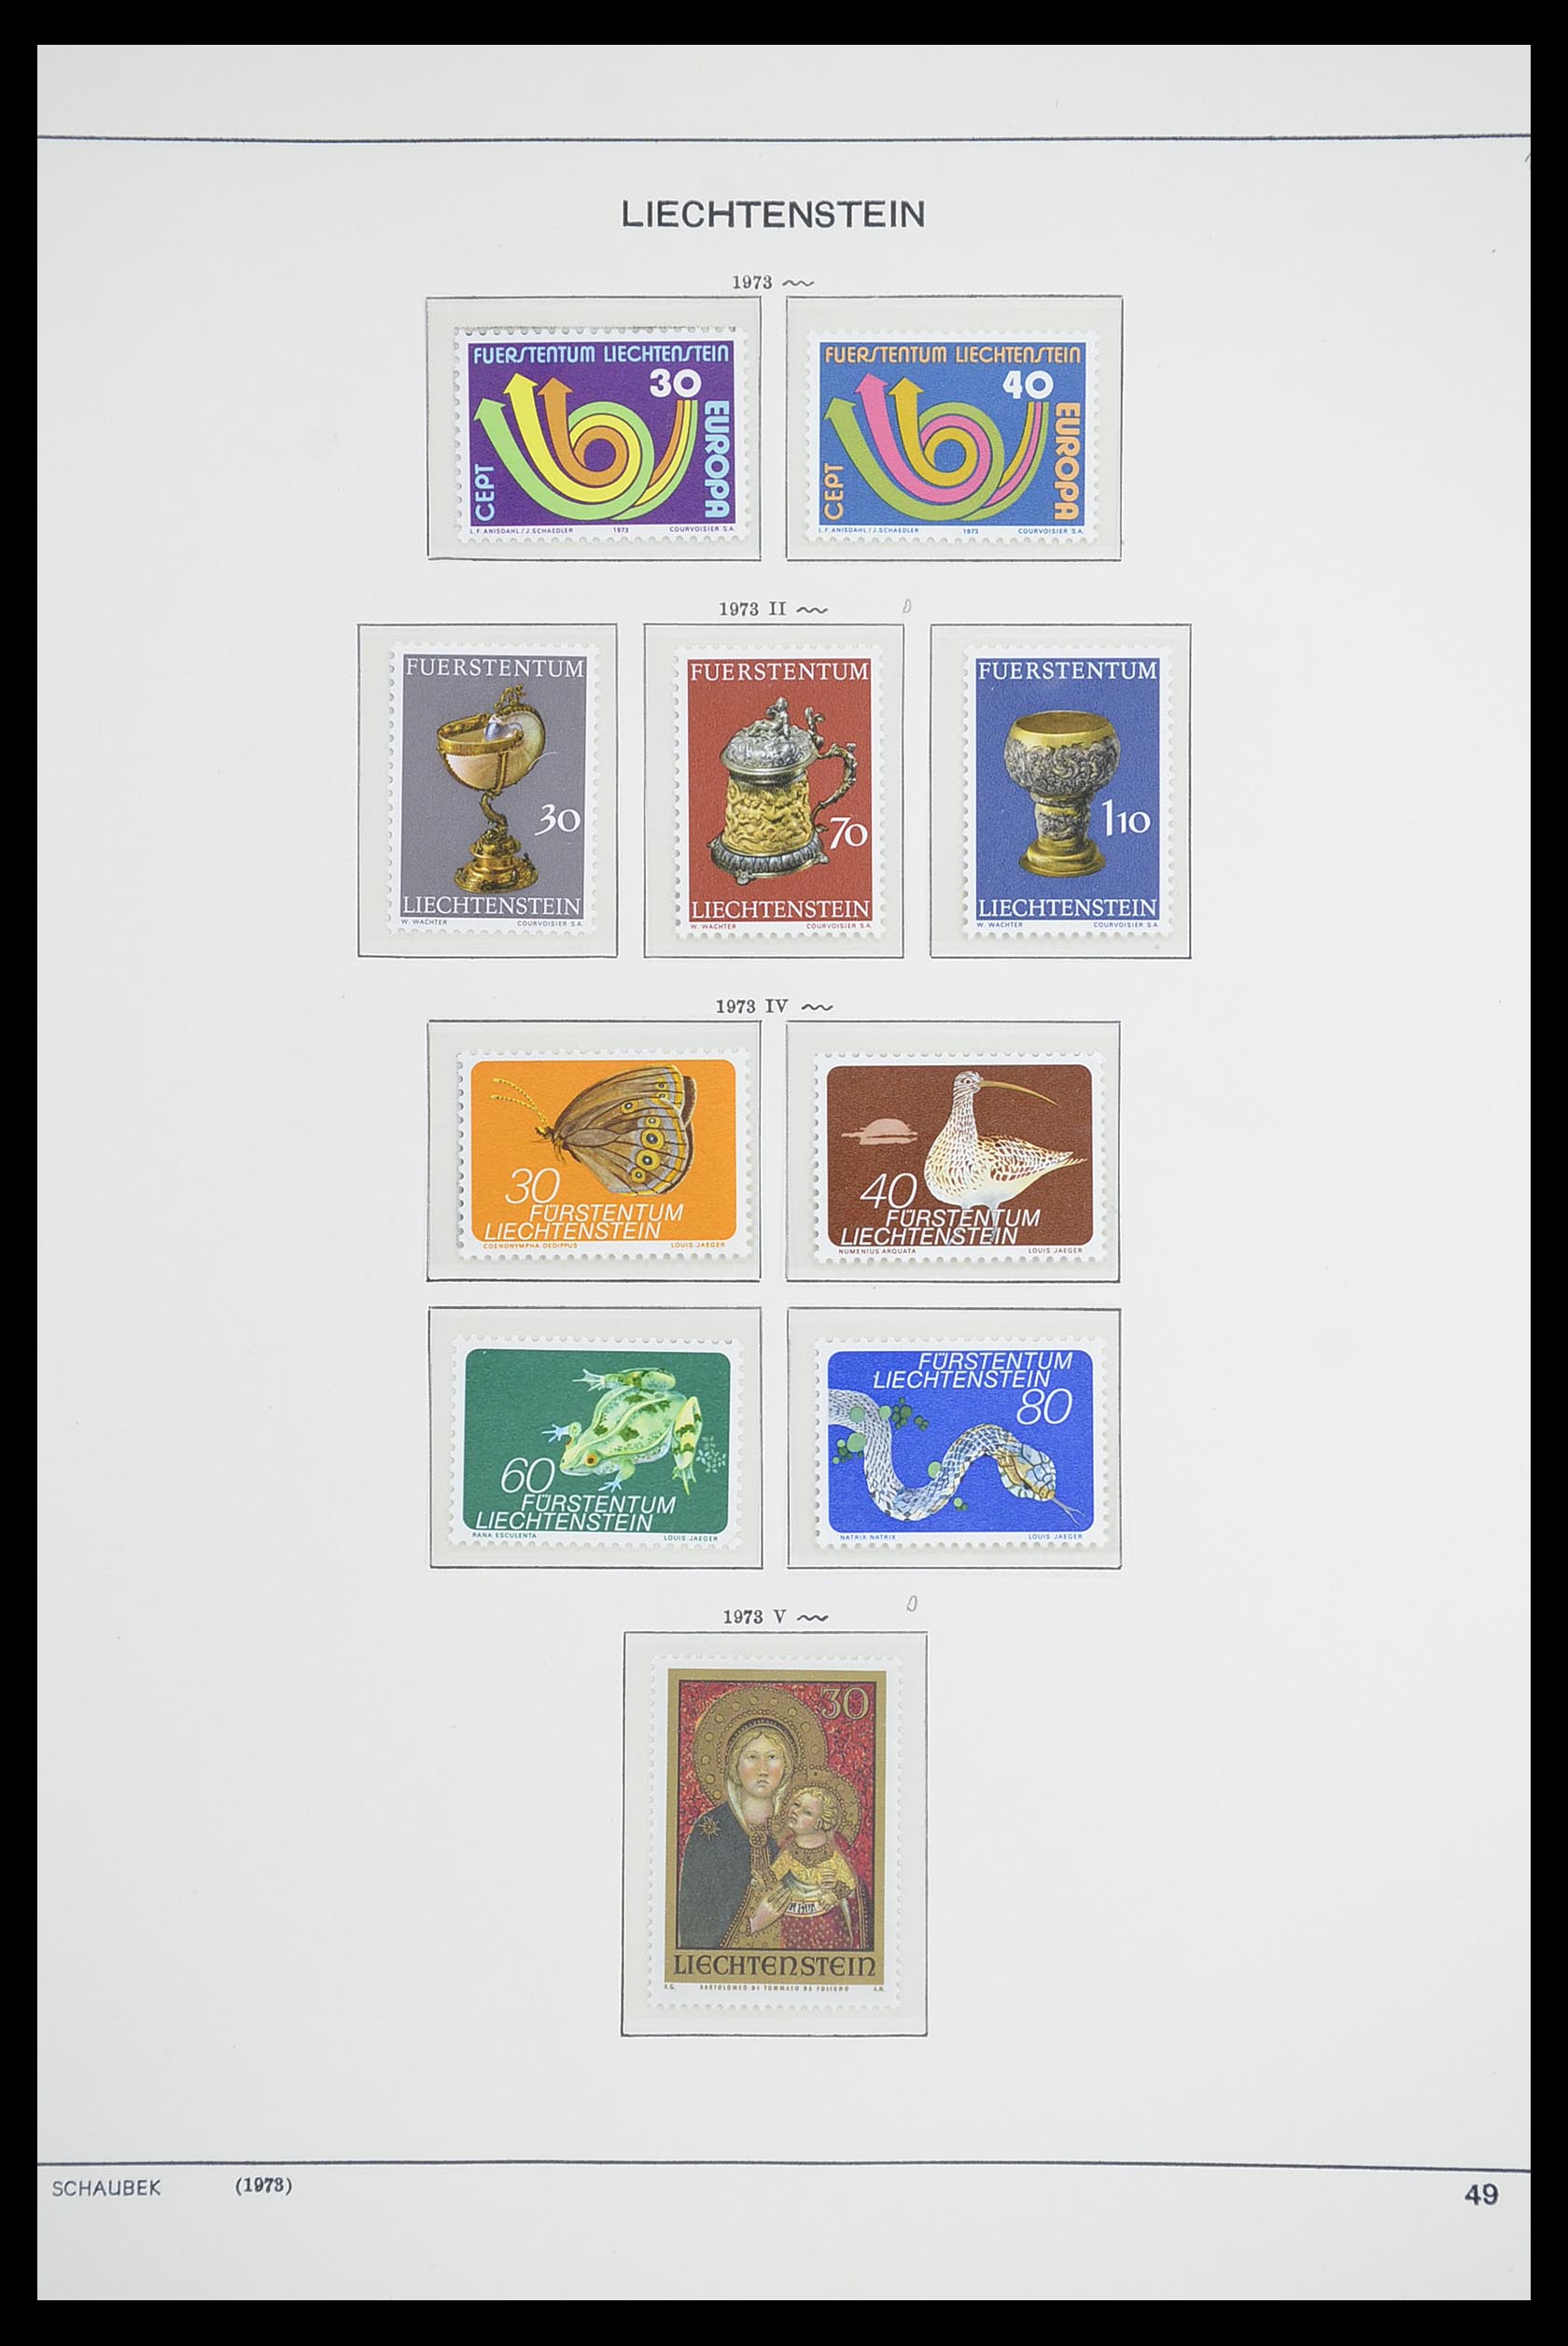 33274 058 - Stamp collection 33274 Liechtenstein 1912-1996.